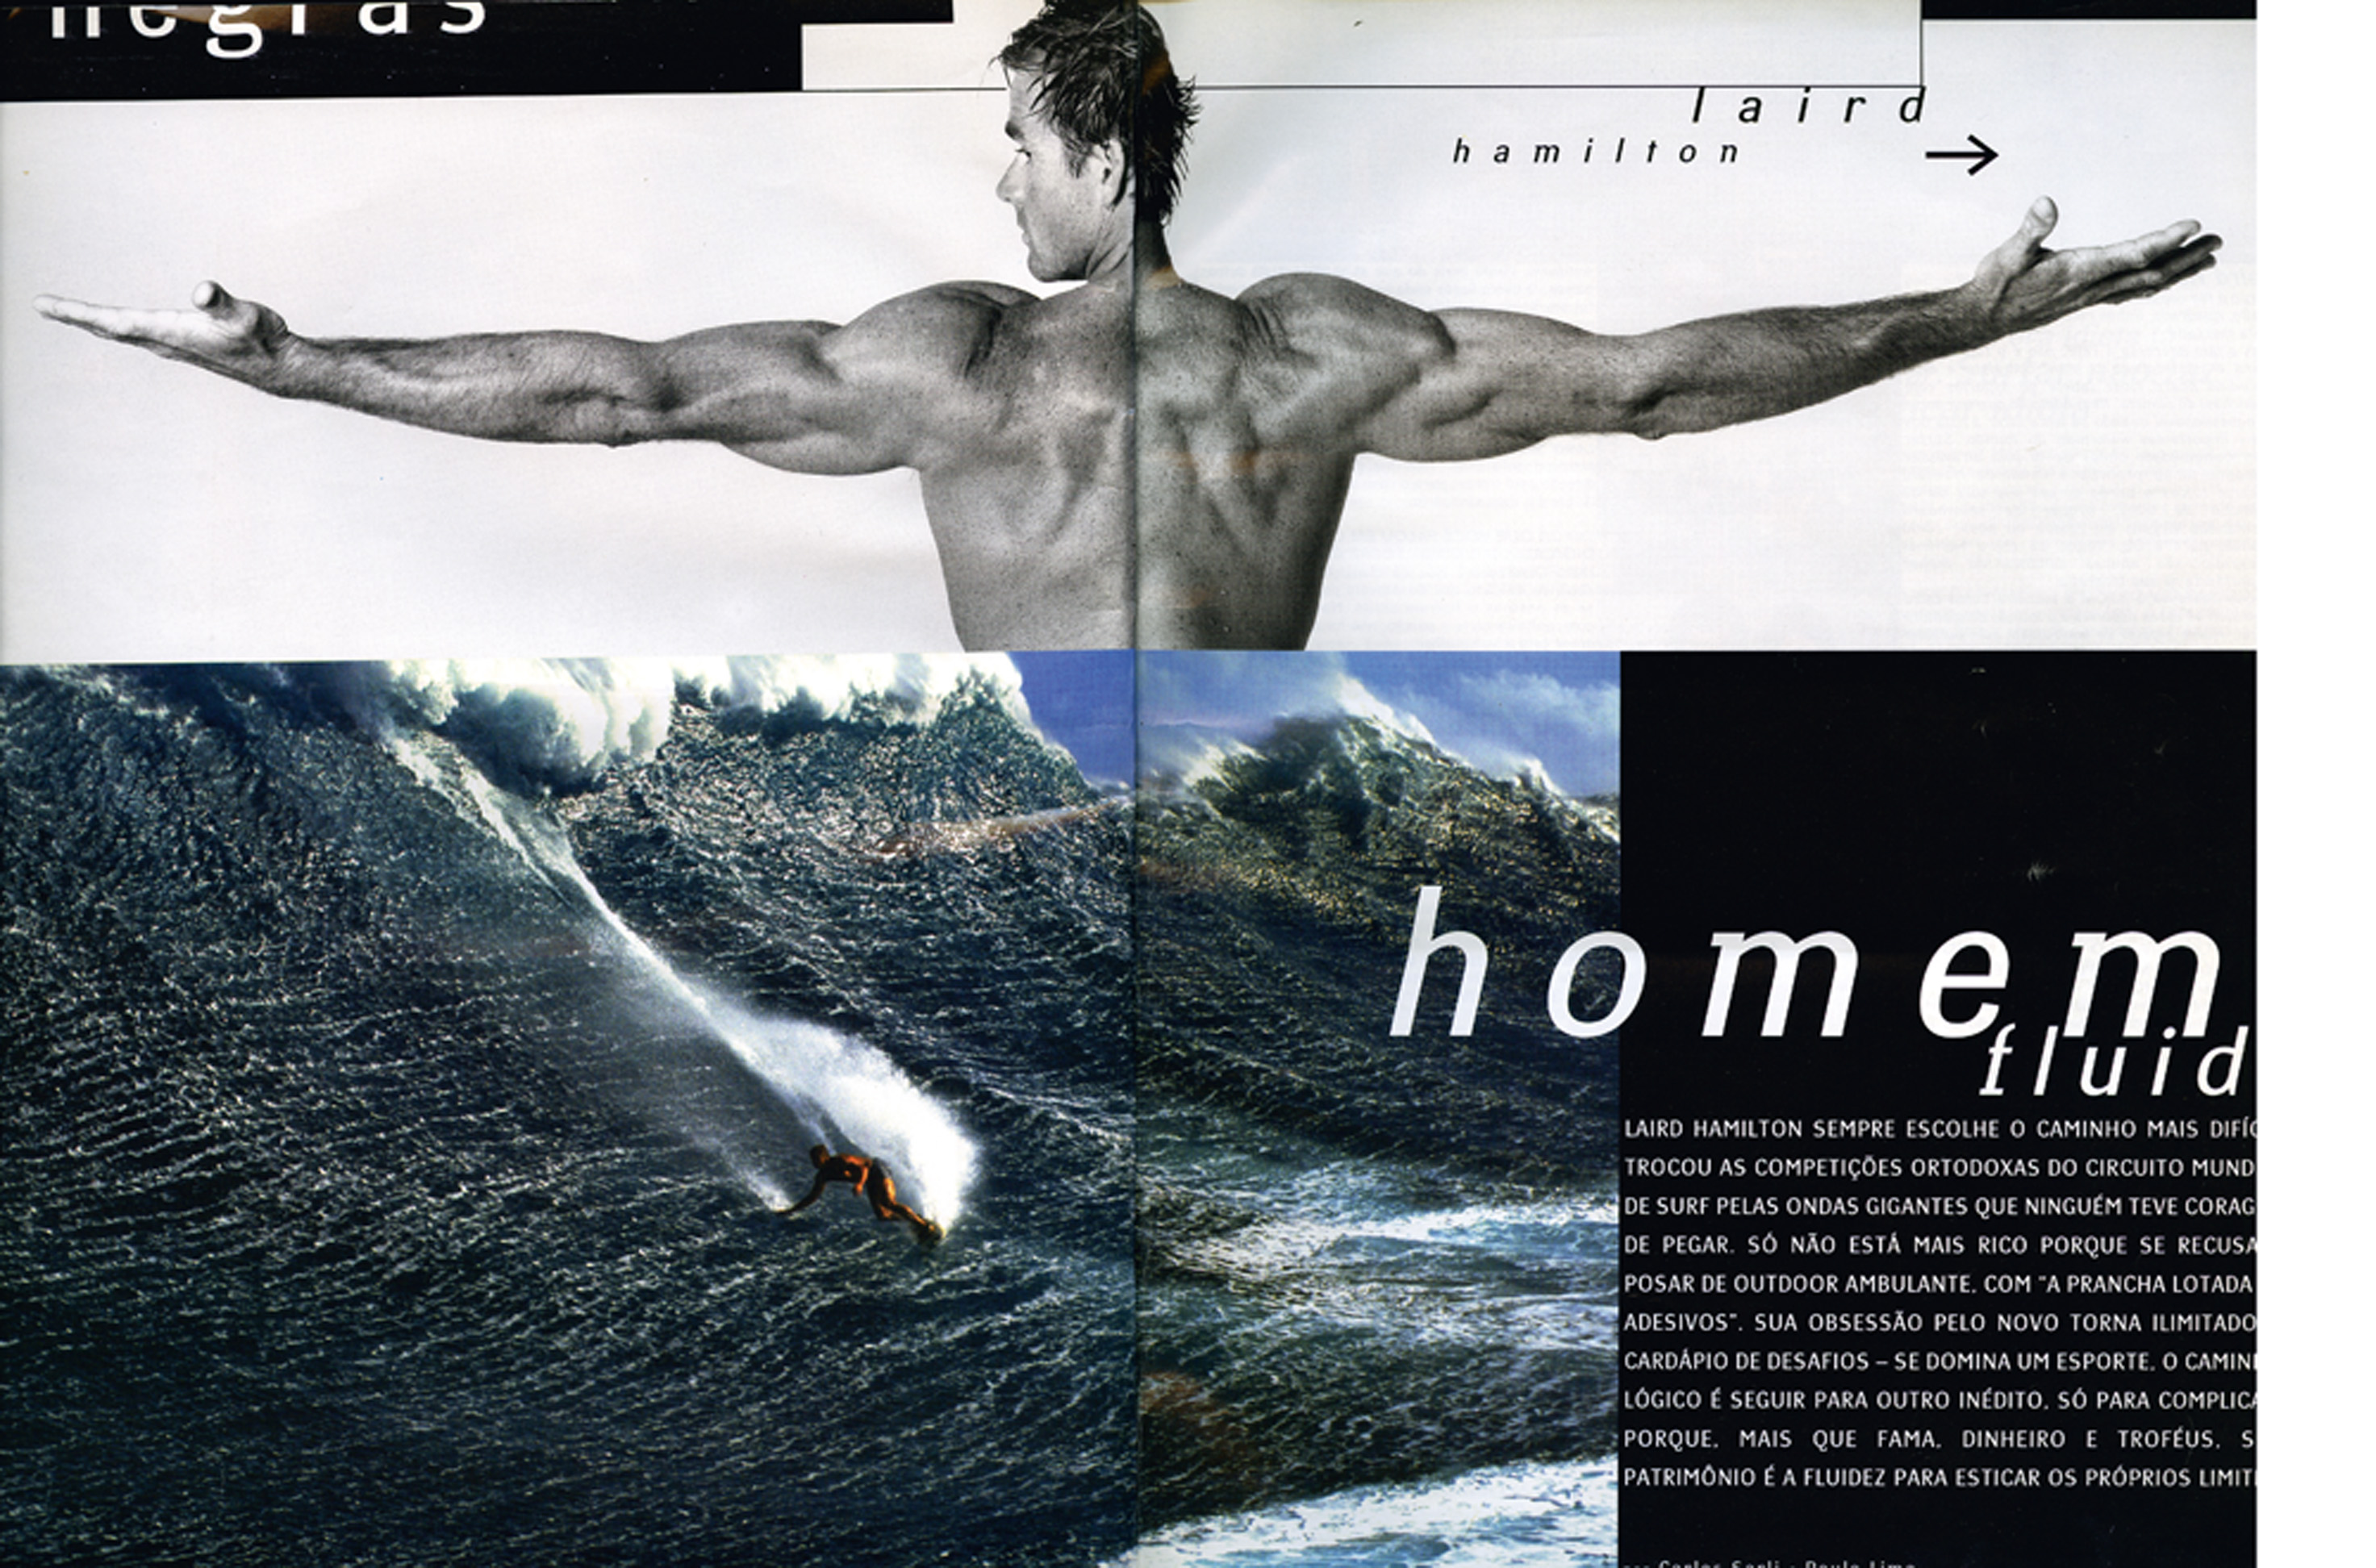 Laird Hamilton (1964/–) _nacionalidade: norte-americano / principal feito: free surfer de ondas gigantes, é o mais completo board rider do planeta e coinventor do tow-in surf / registro: Páginas Negras na Trip 82 [2000]